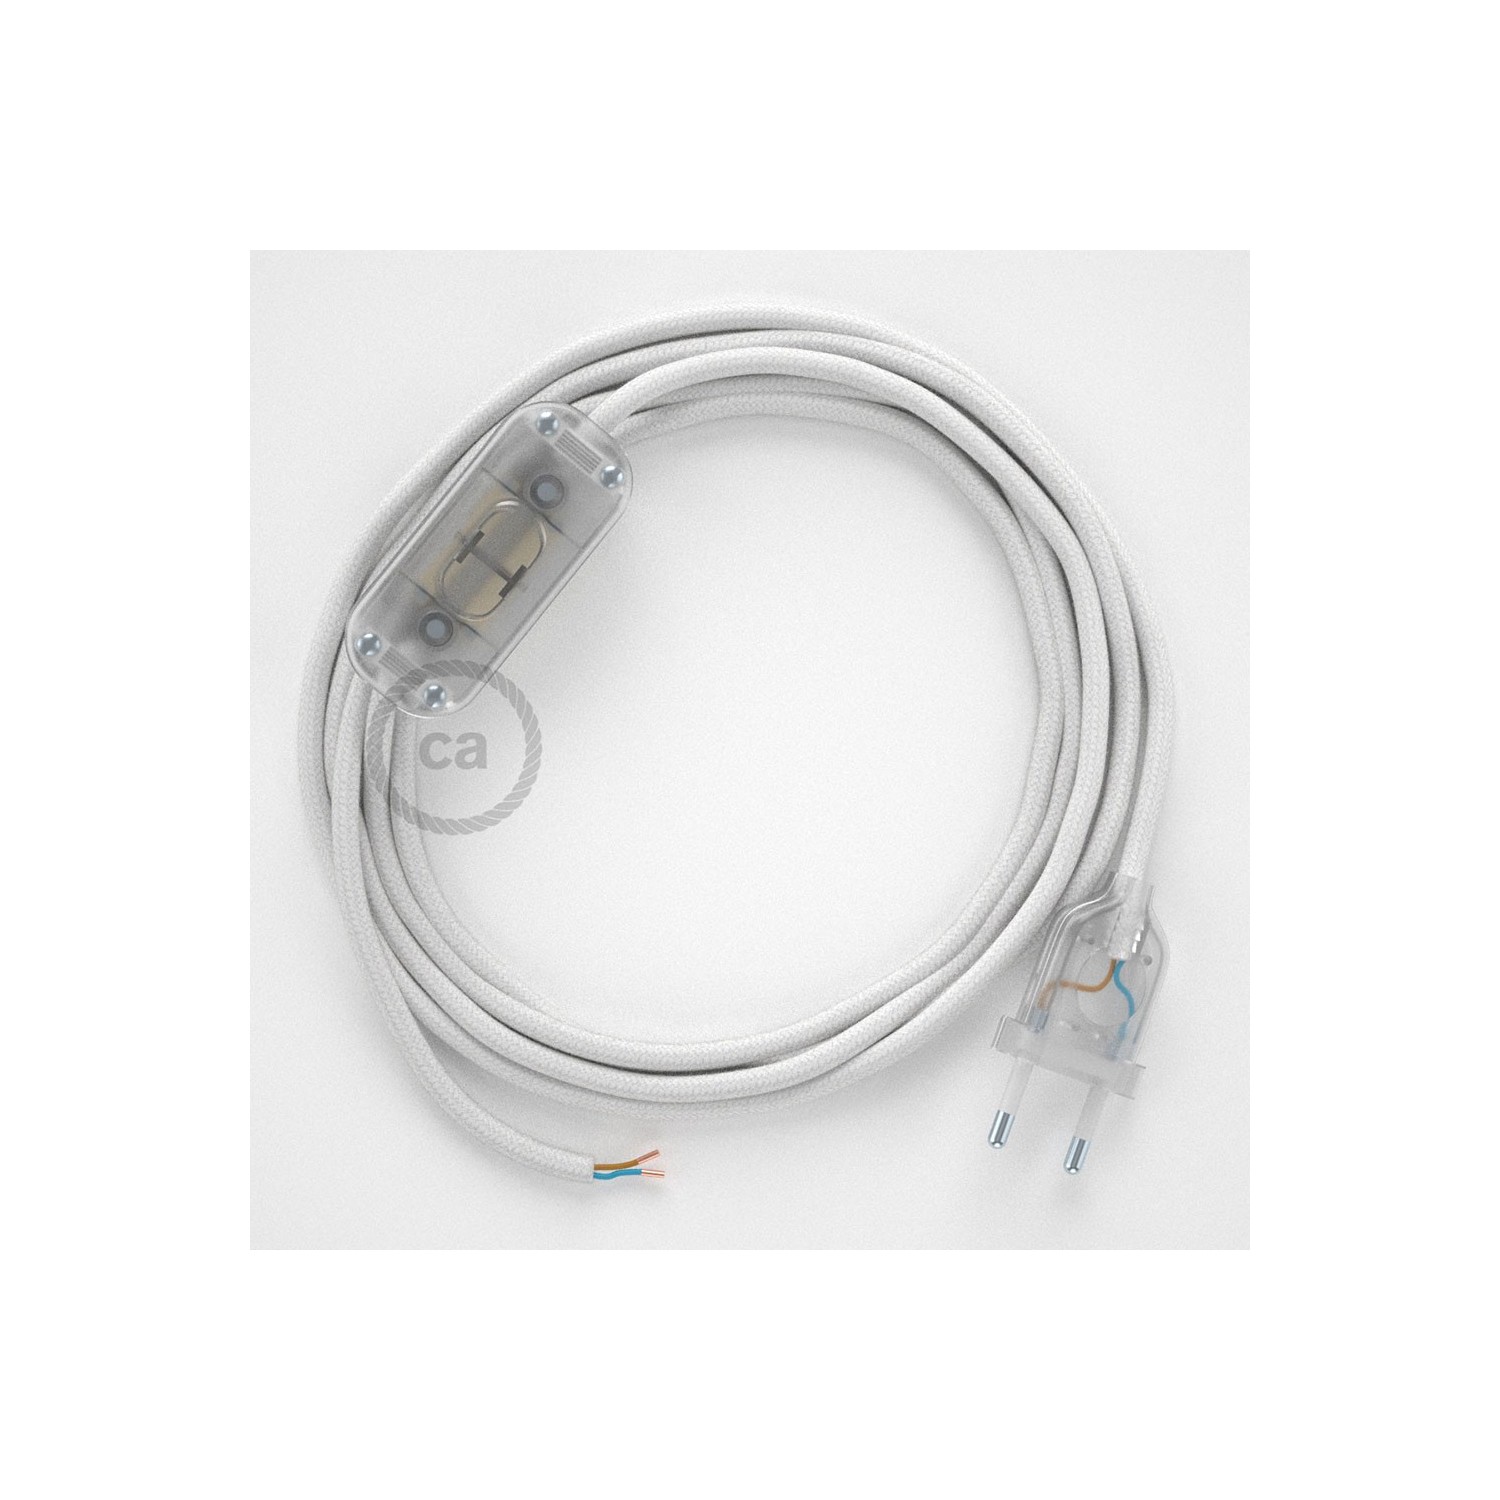 Cordon pour lampe, câble RC01 Coton Blanc 1,80 m. Choisissez la couleur de la fiche et de l'interrupteur!